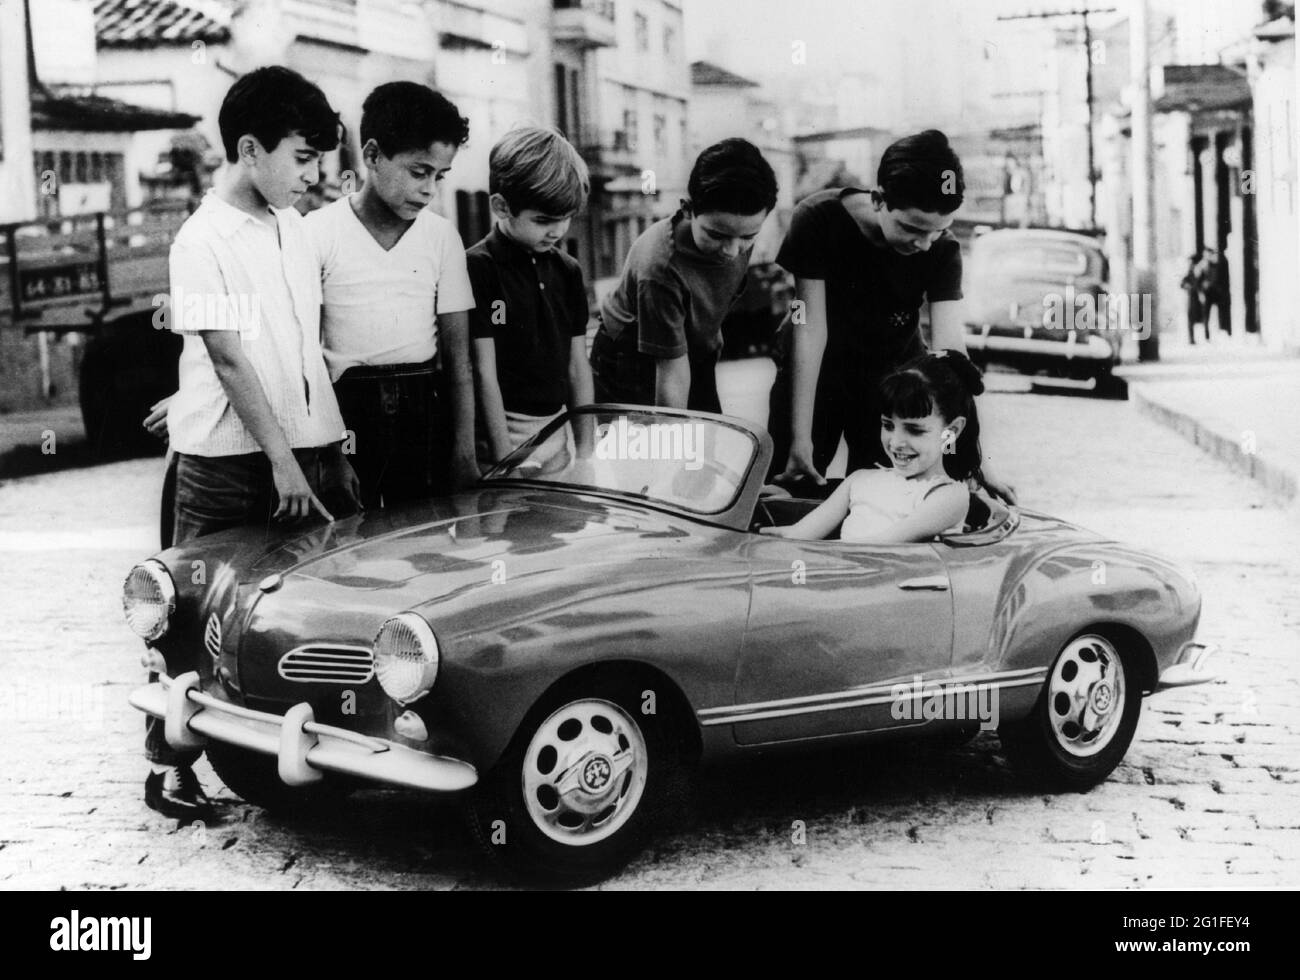 Hobby, Modellbau, Gruppe von Kindern mit einem Dinky-Auto, 60er Jahre, ZUSÄTZLICHE-RIGHTS-CLEARANCE-INFO-NOT-AVAILABLE Stockfoto